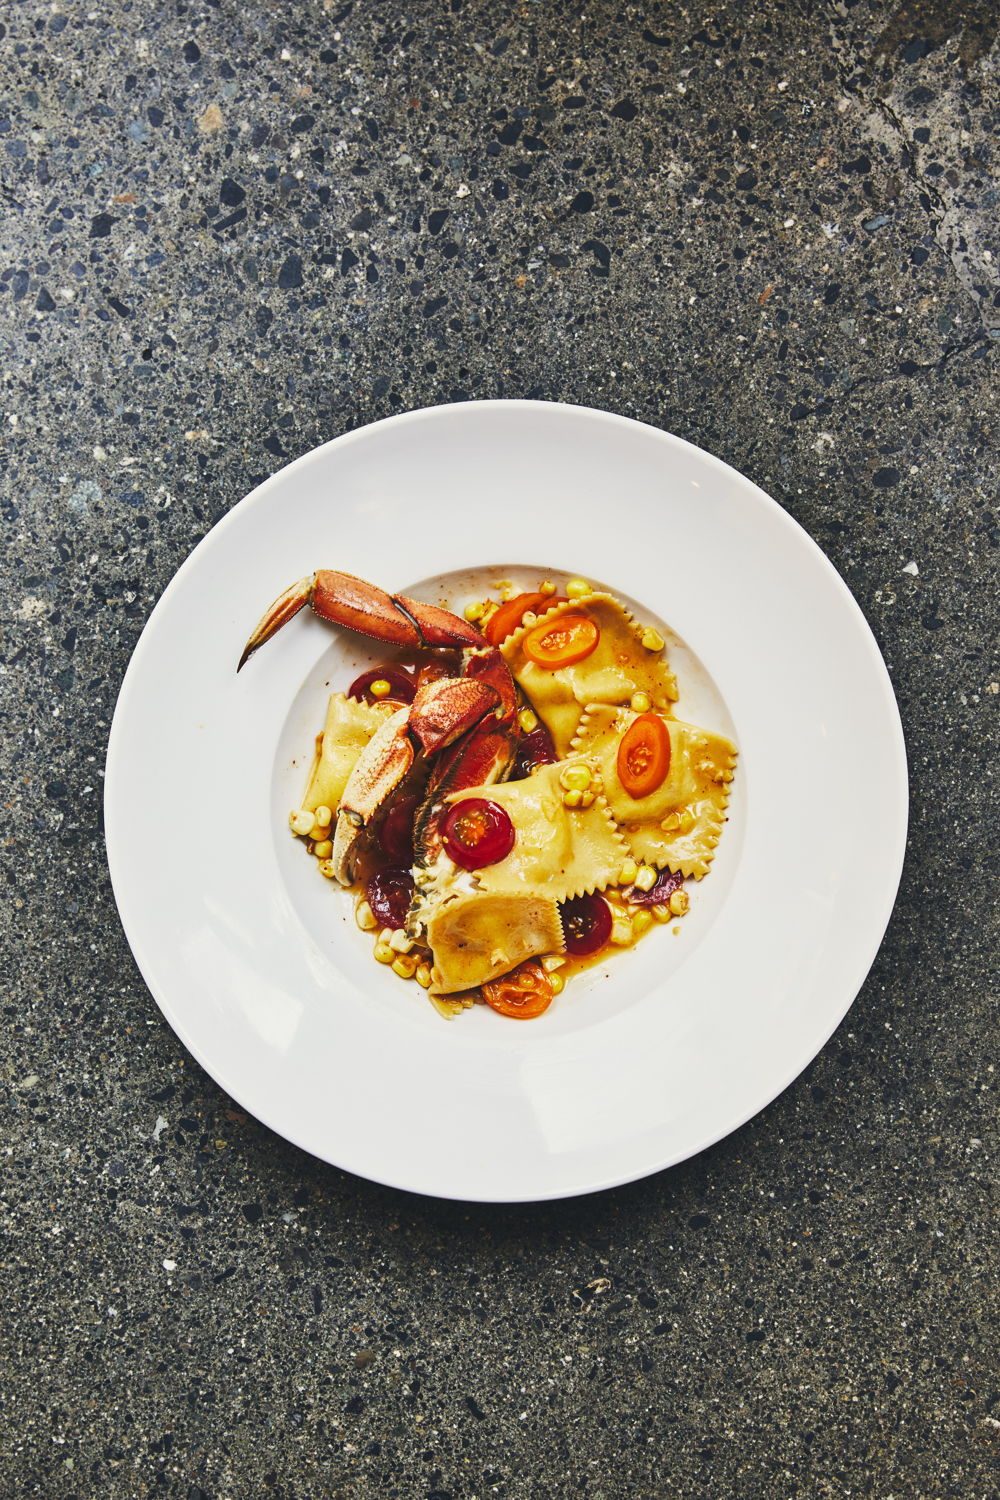 Nowhere *A Restaurant - Nos sens en éveil : le crabe dormeur attire tous les regards dans ce riche plat de raviolis.
(Maude Chauvin/Air Canada enRoute magazine)